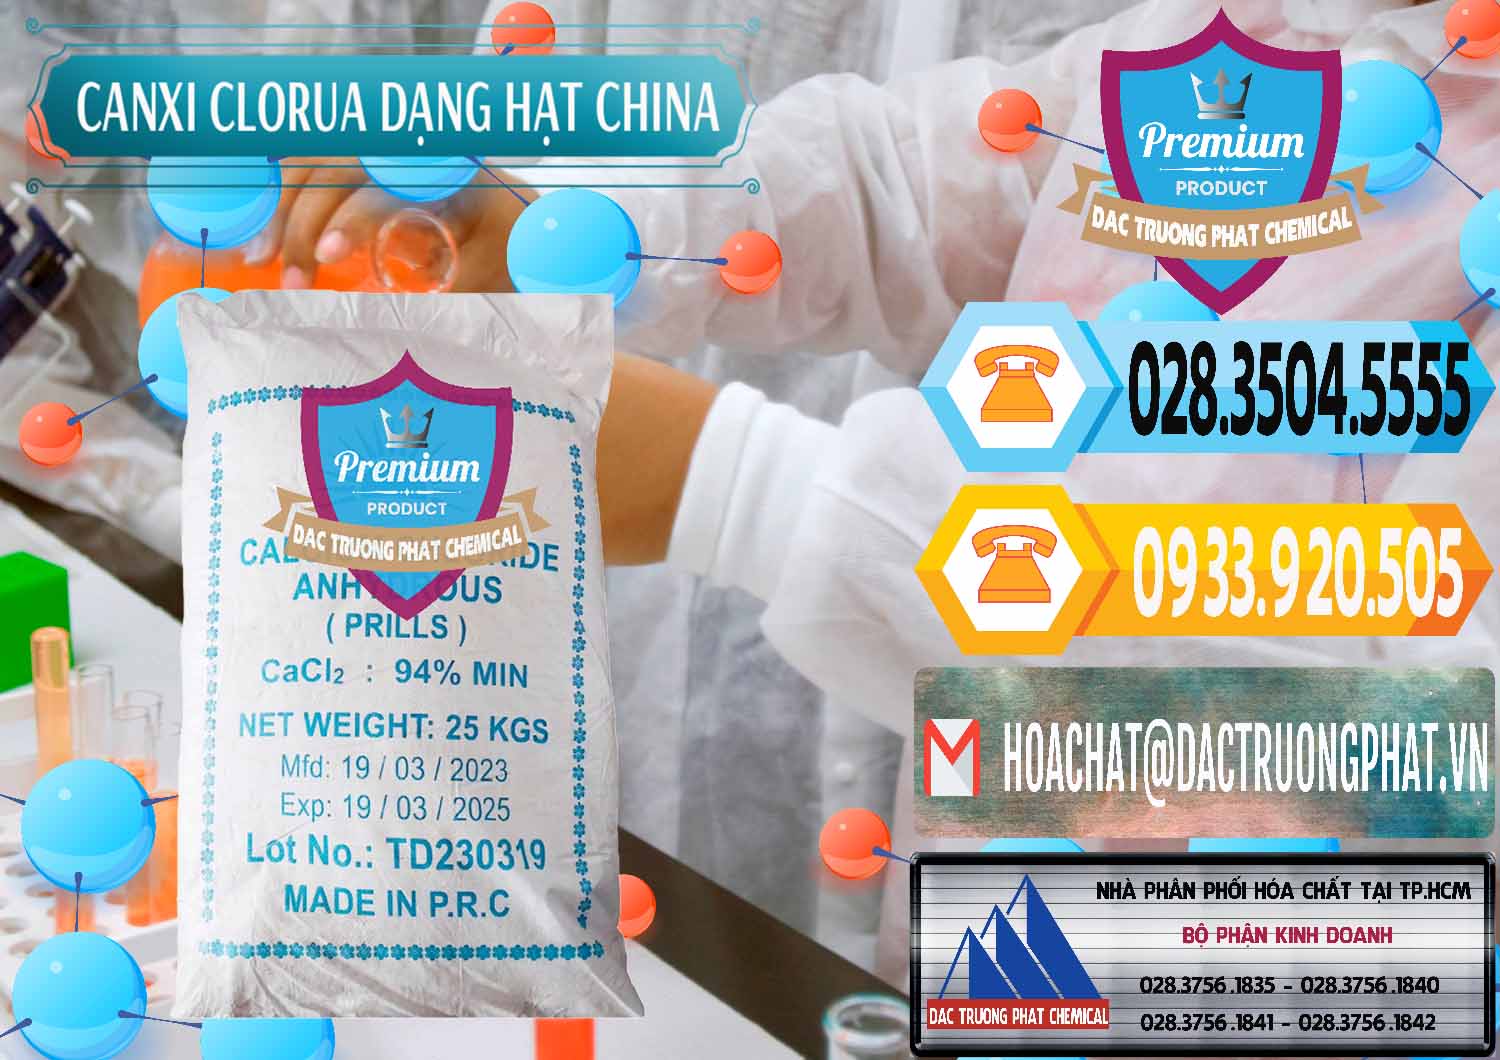 Nơi bán và cung ứng CaCl2 – Canxi Clorua 94% Dạng Hạt Trung Quốc China - 0373 - Cty kinh doanh _ phân phối hóa chất tại TP.HCM - hoachattayrua.net